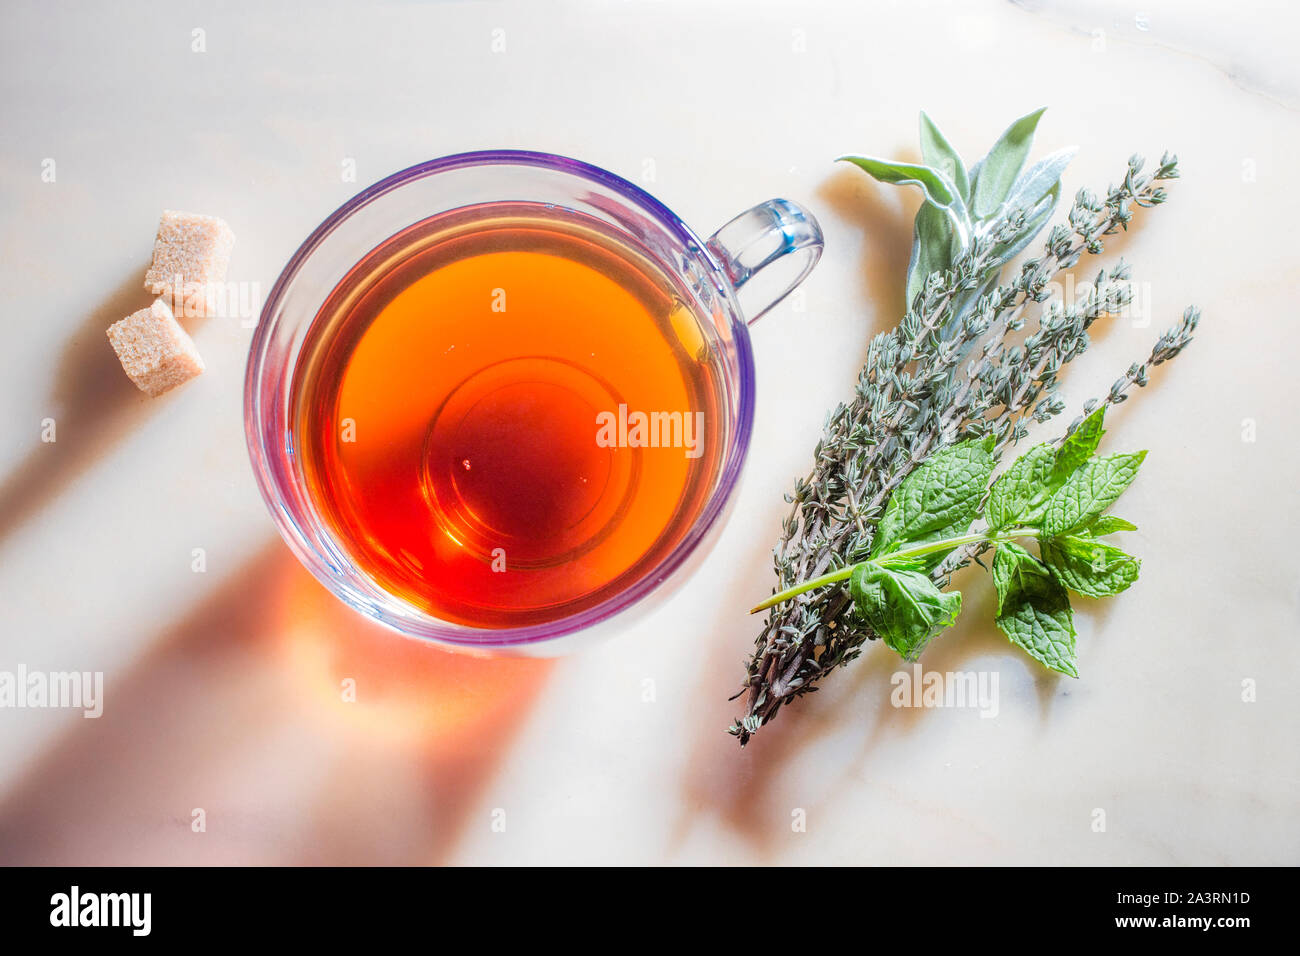 Immagine del vetro con la tazza di tè di erbe e di zucchero sulla superficie di marmo. Foto Stock